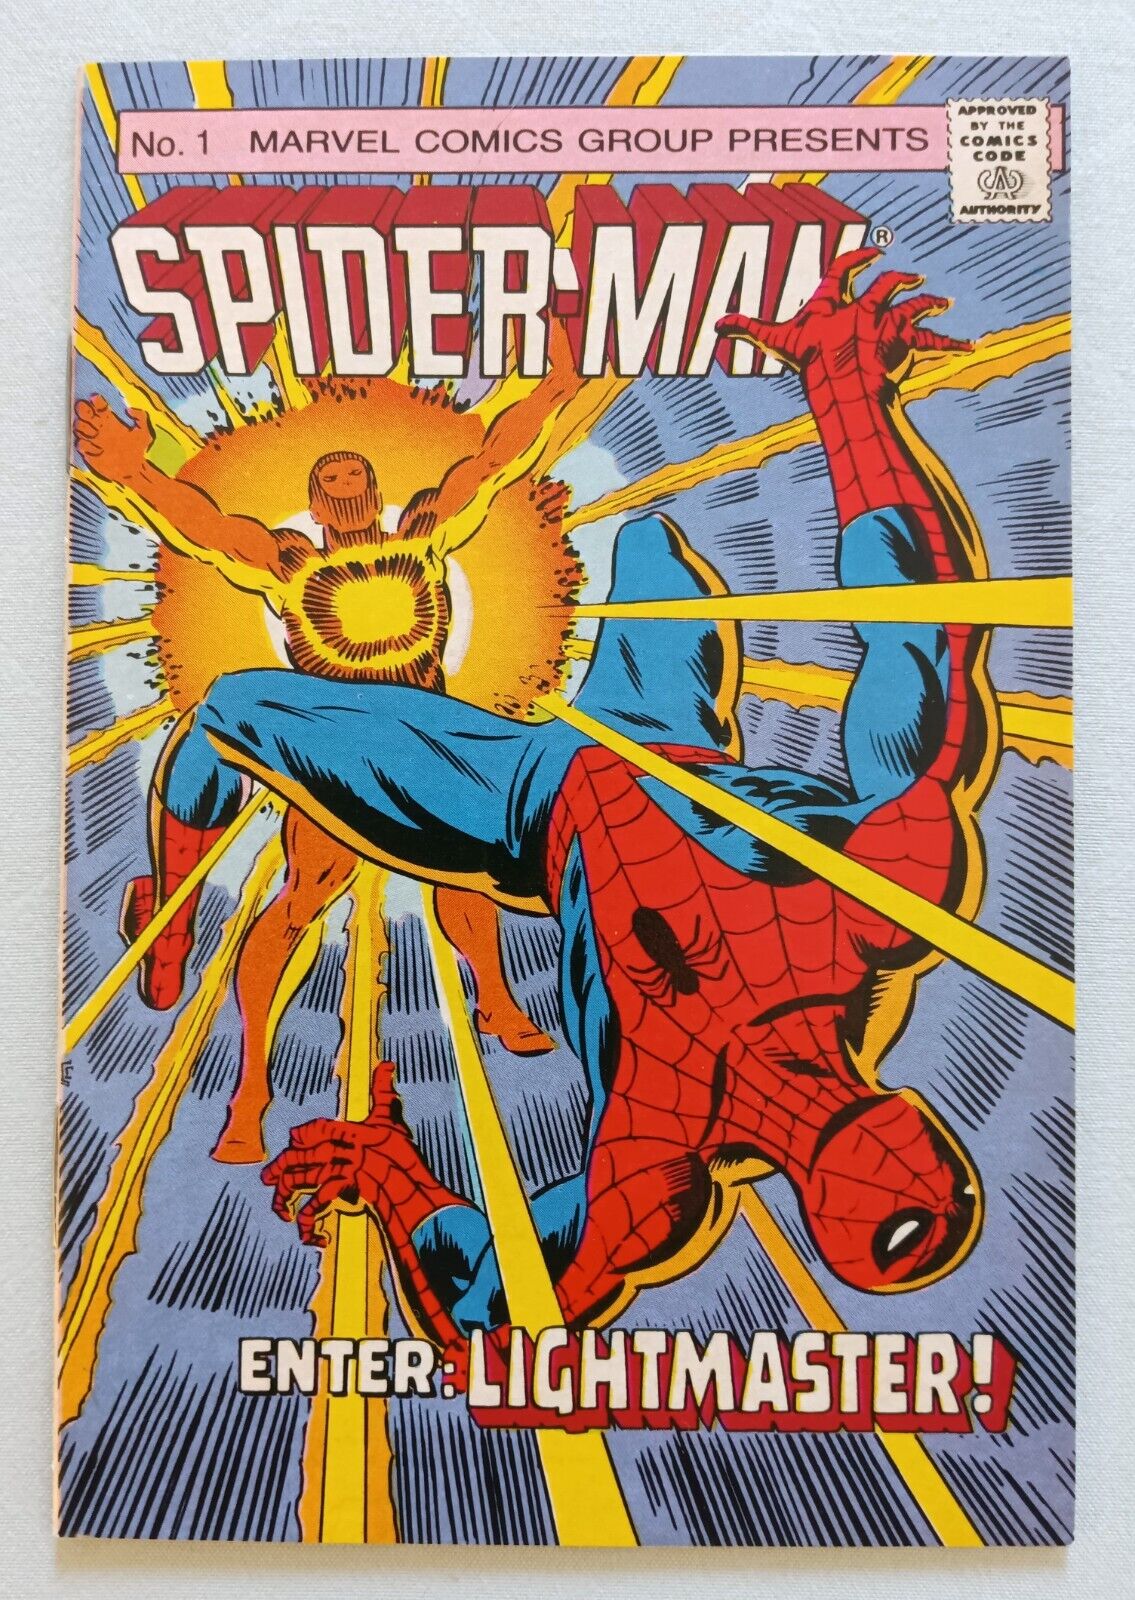 SPIDER-MAN #1 MINI COMIC, MARVEL, HI-C PROMO COMIC, VF, COPPER AGE, 1987